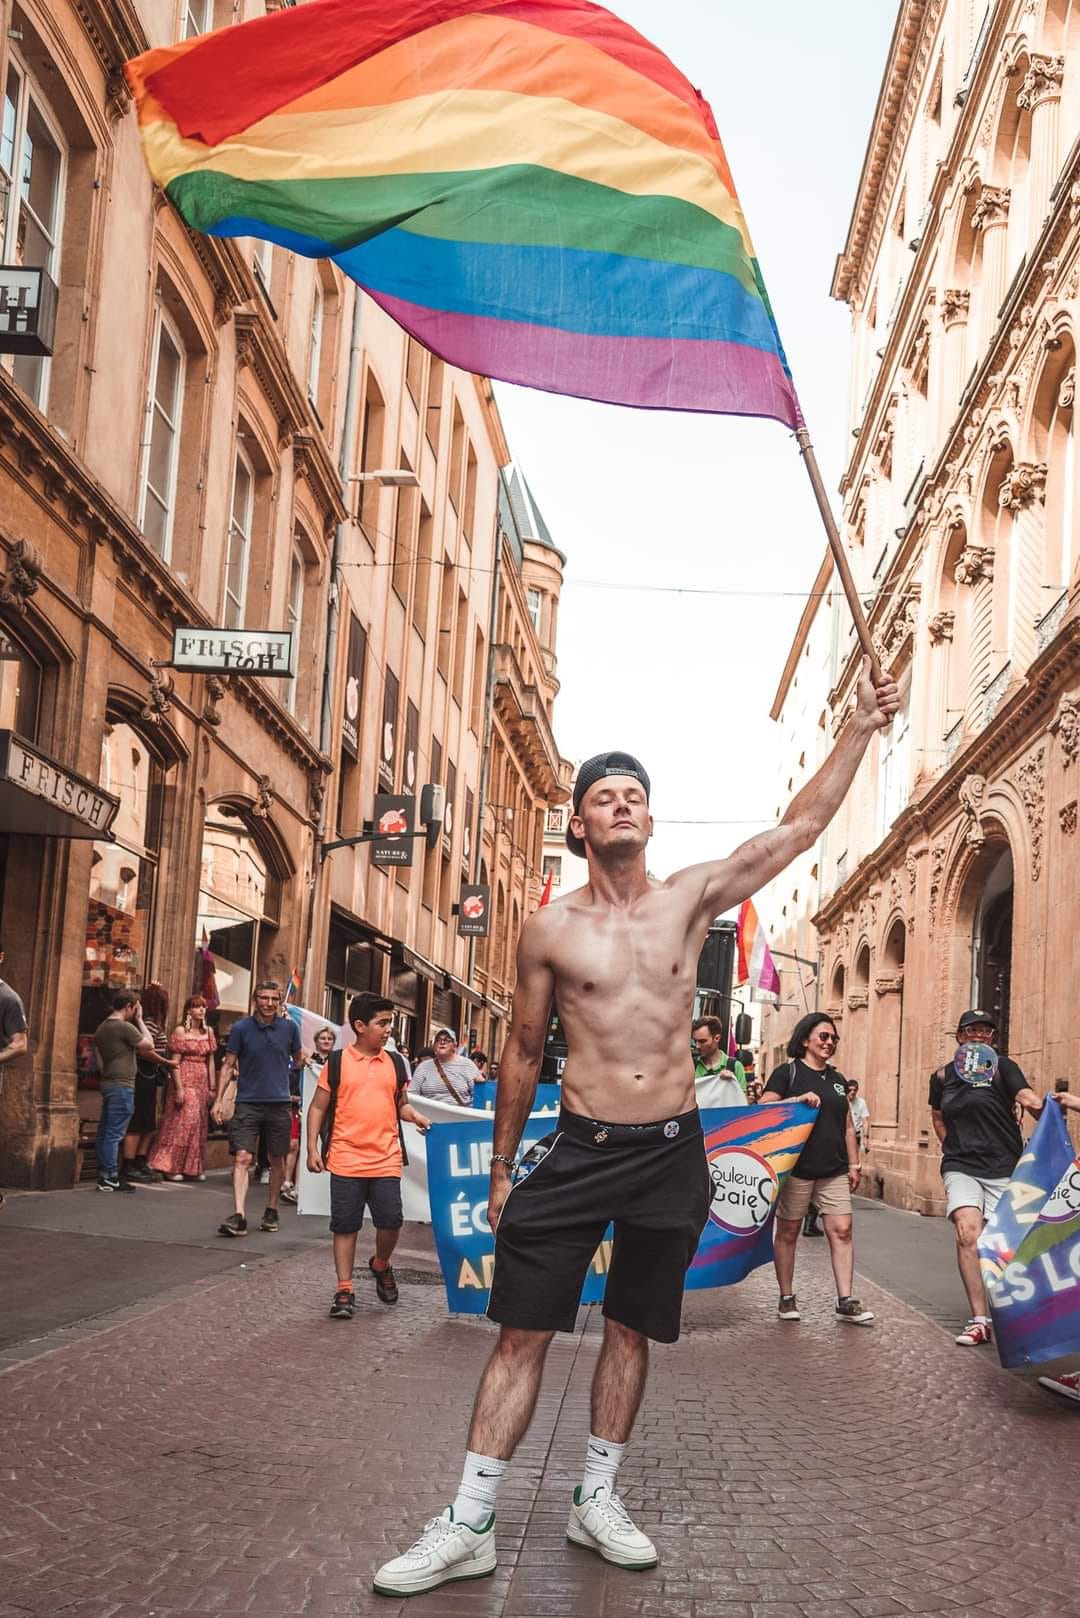 Histoire de la gay pride de Metz